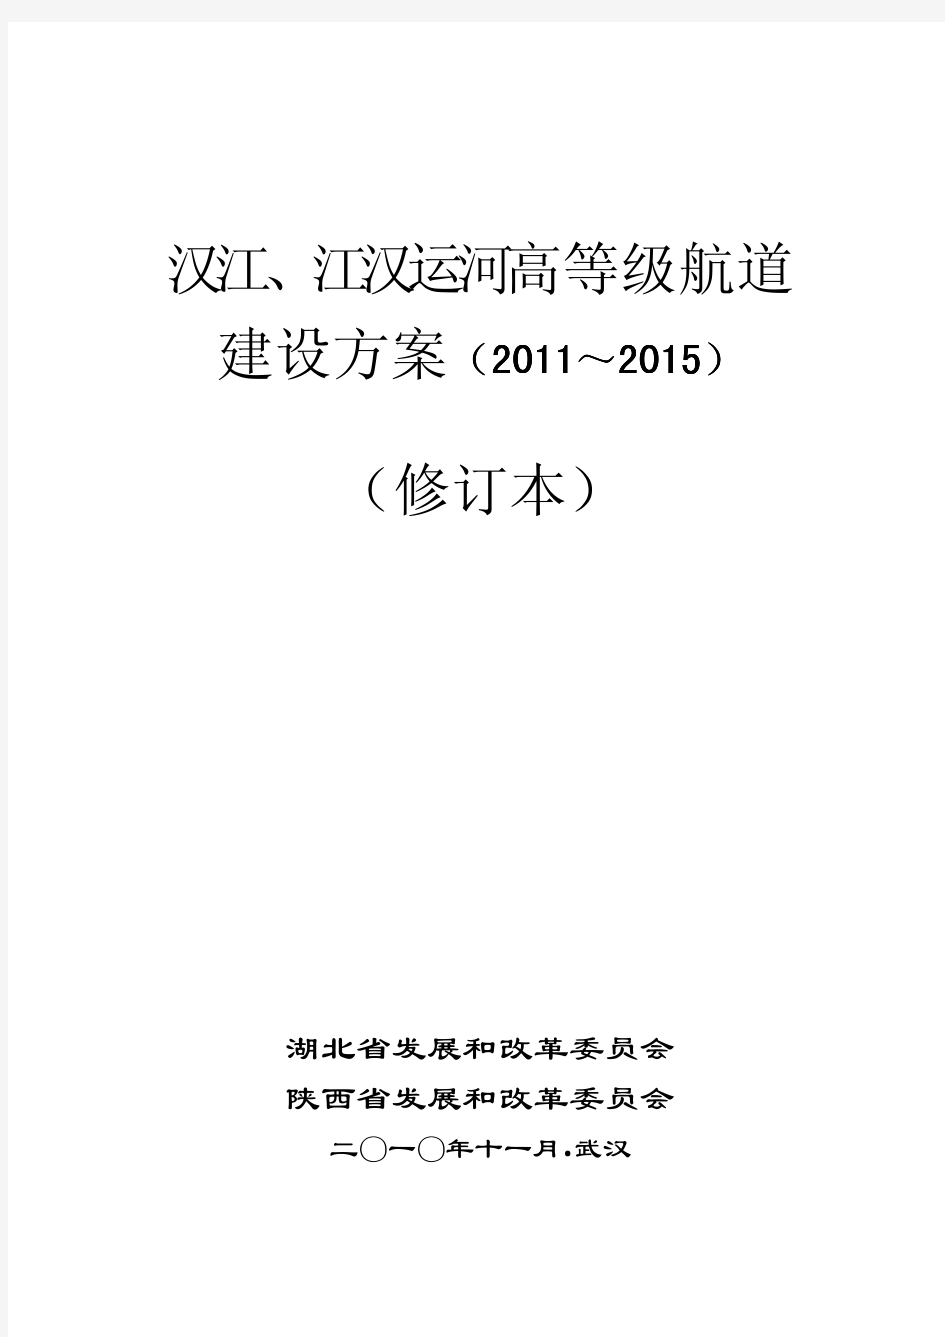 汉江、江汉运河高等级航道建设方案(2011-2015)修订本